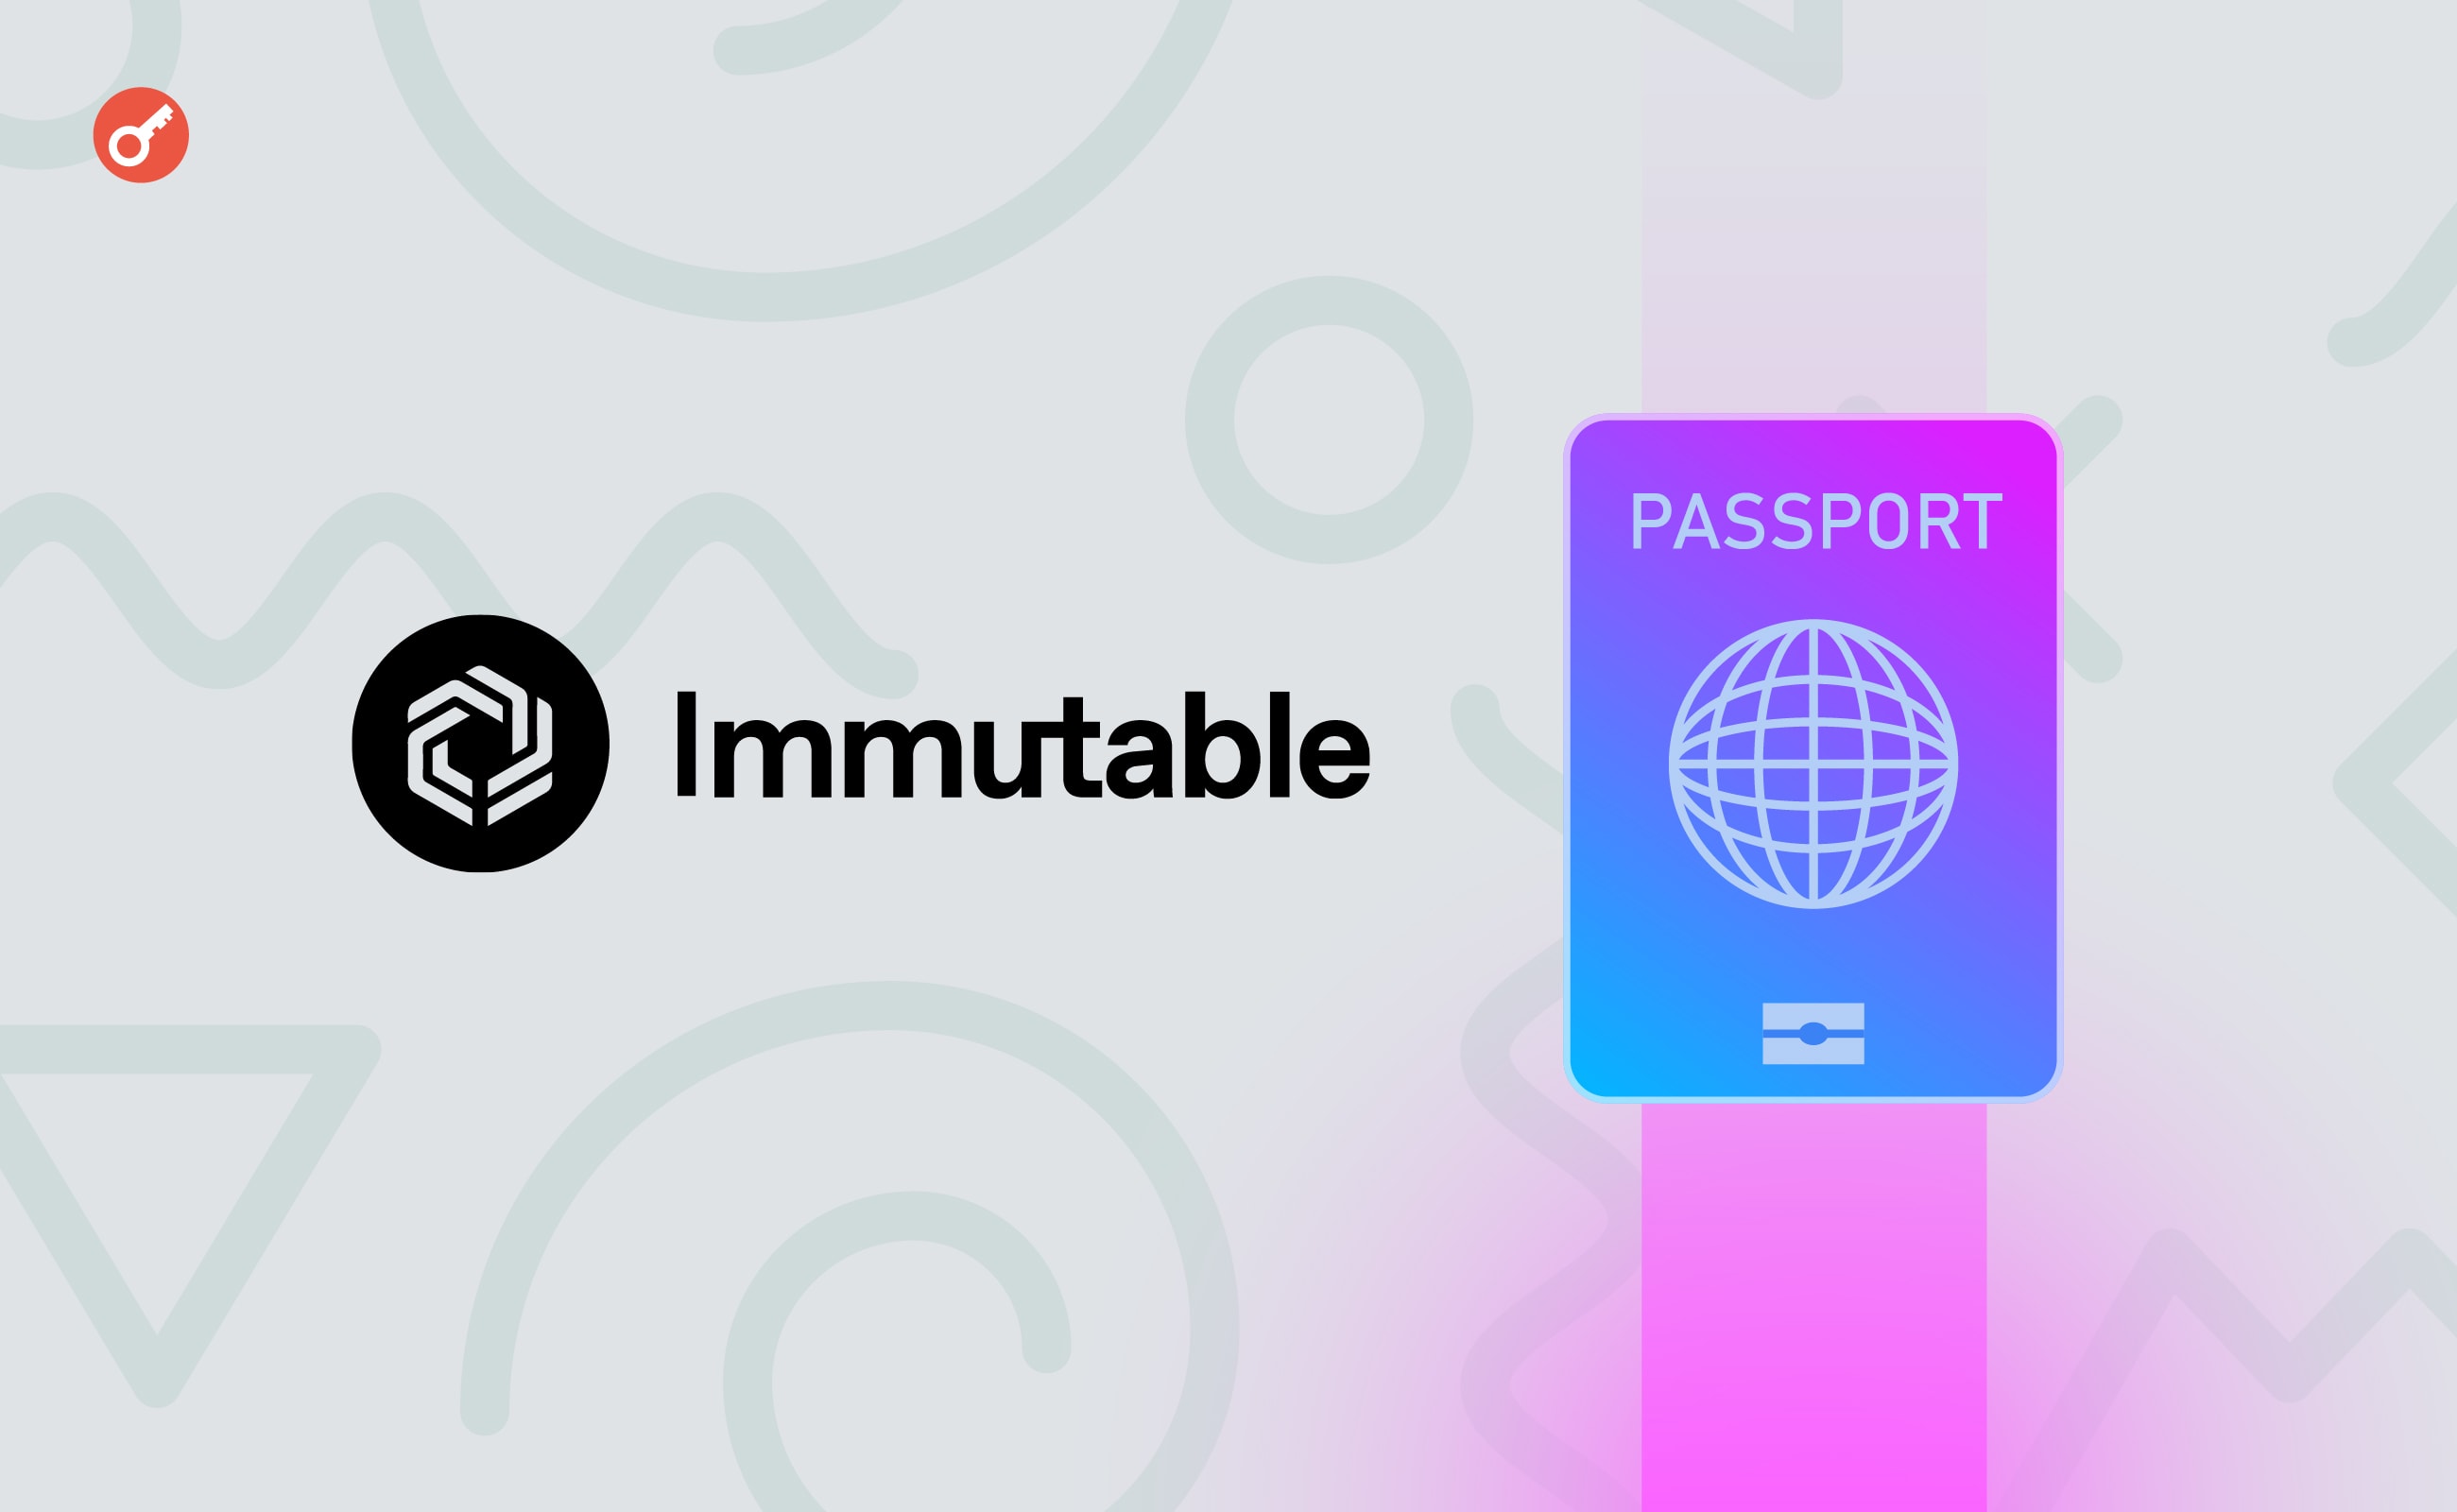 Immutable офіційно представила Passport для гравців. Головний колаж новини.